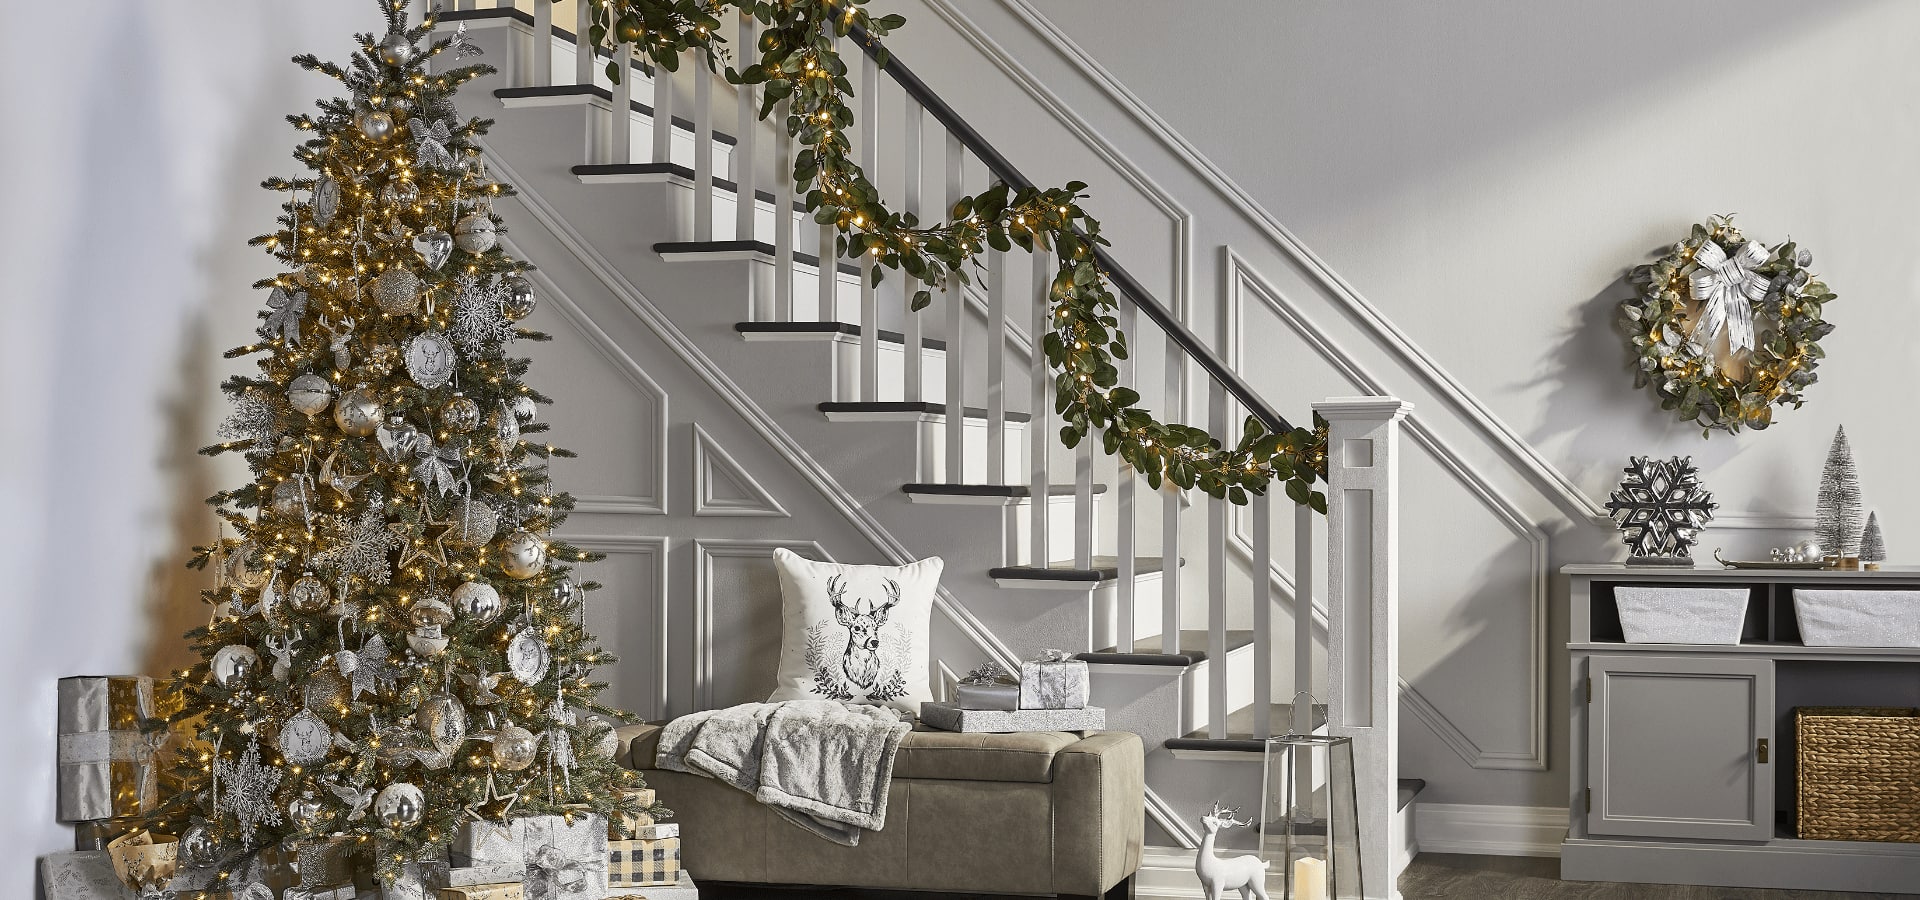  Sapin de Noël et décorations argentées dans un salon.